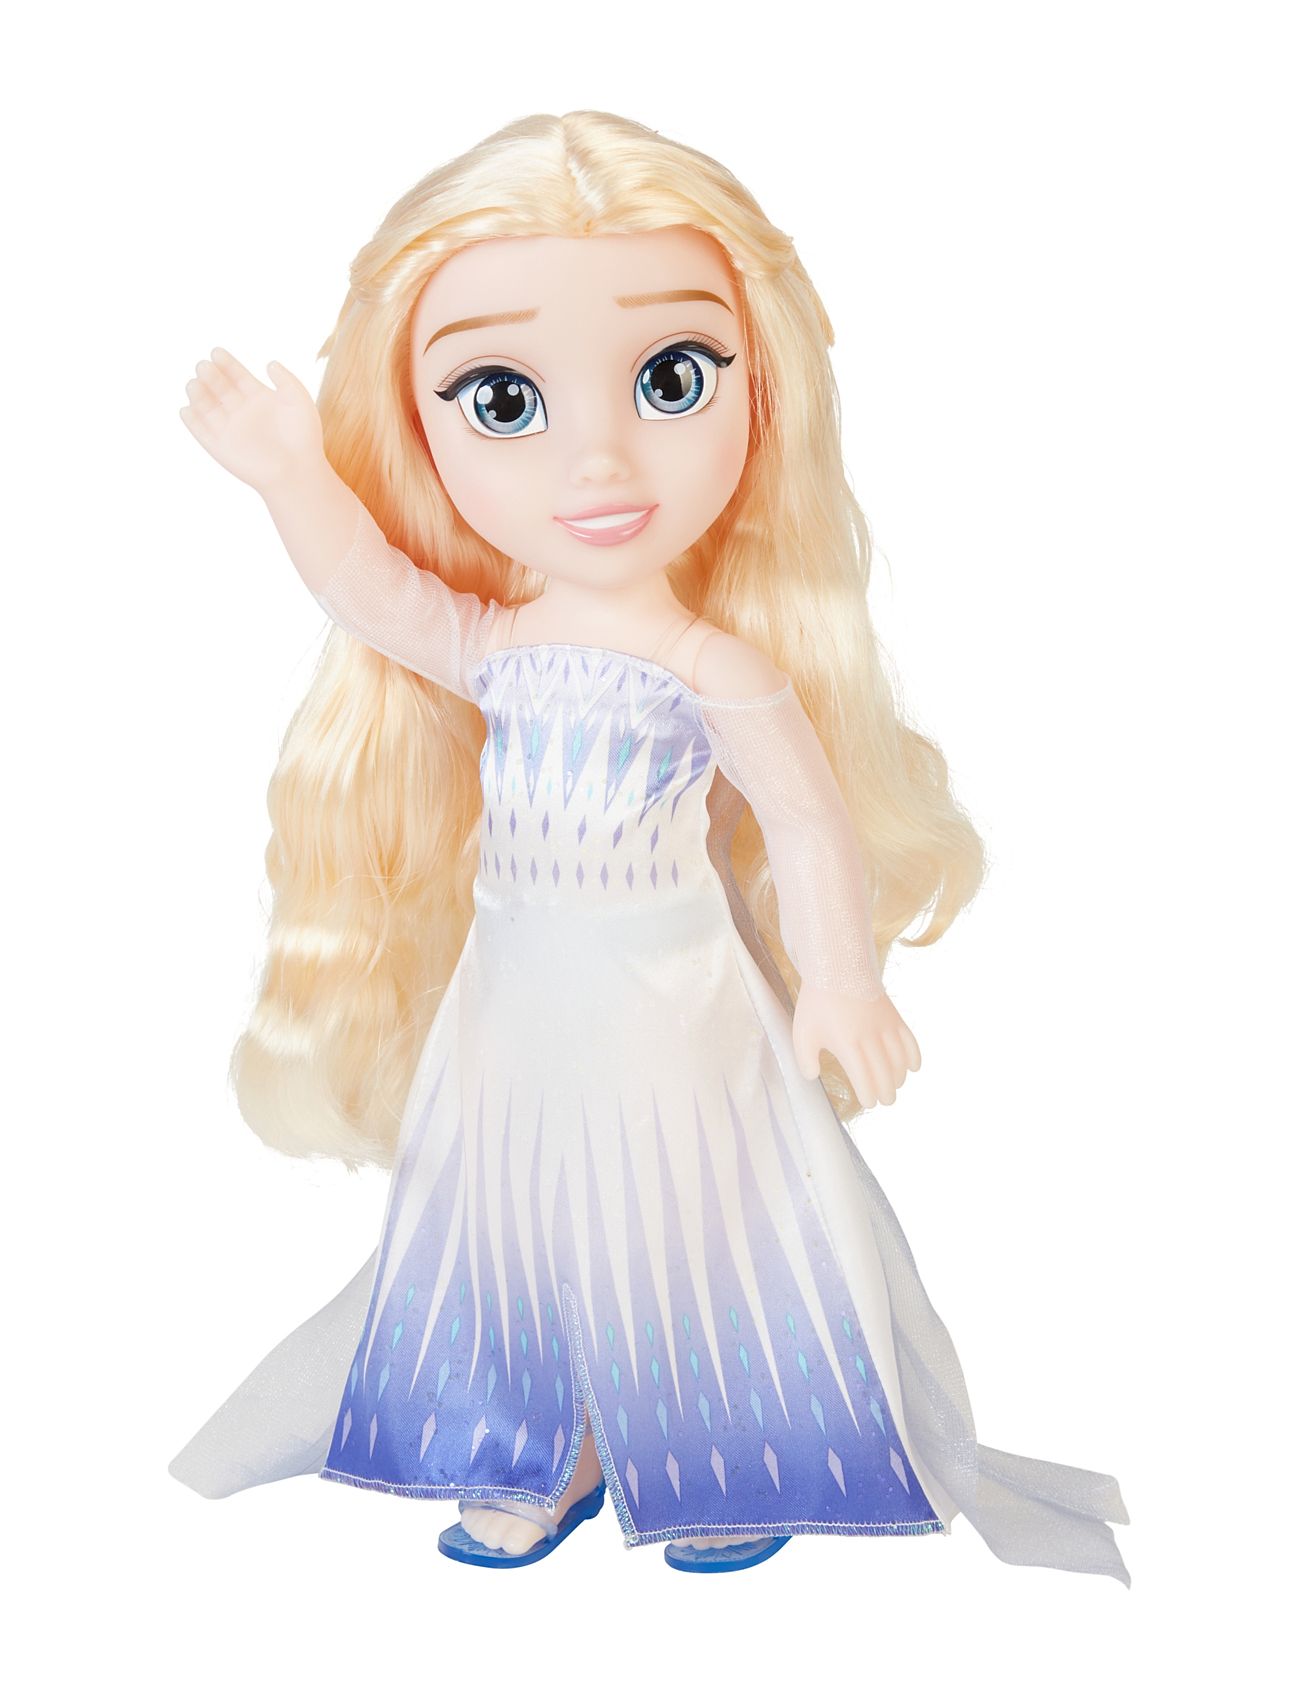 Frozen Elsa The Snow Queen Epilogue Doll 38Cm. Toys Dolls & Accessories Dolls Multi/patterned JAKKS